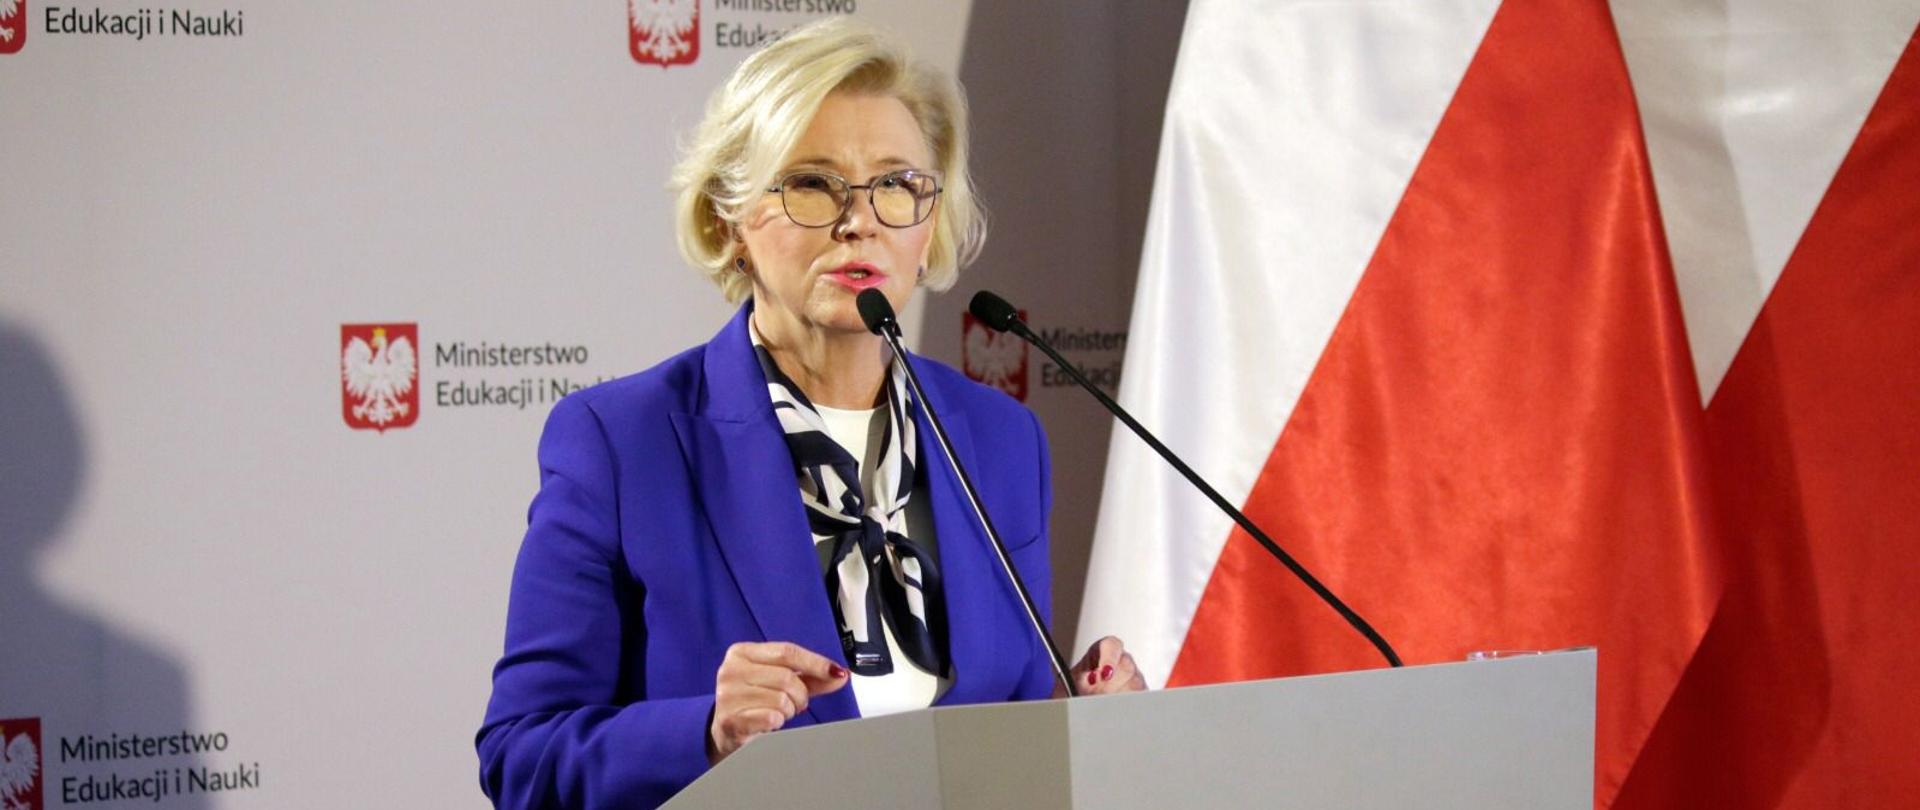 Wiceminister Marzena Machałek stoi przed mównicą podczas konferencji, za nią stoi baner z napisem Ministerstwo Edukacji i Nauki oraz flagi Polski.